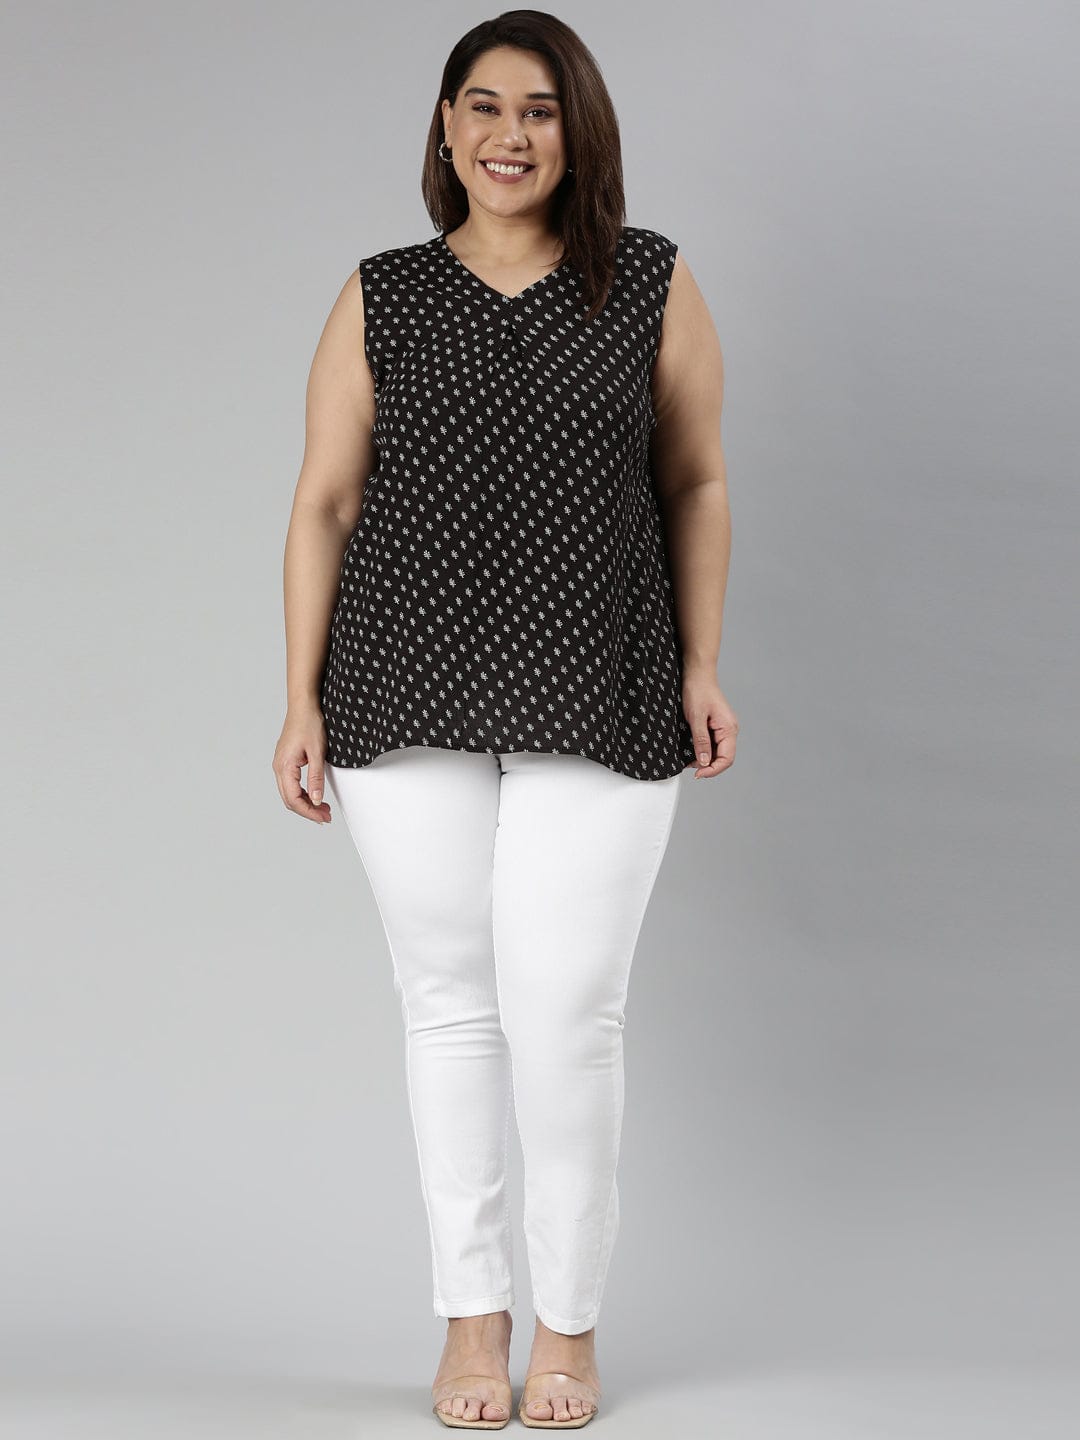 TheShaili - Women's Regular fit Black and white sleeveless top